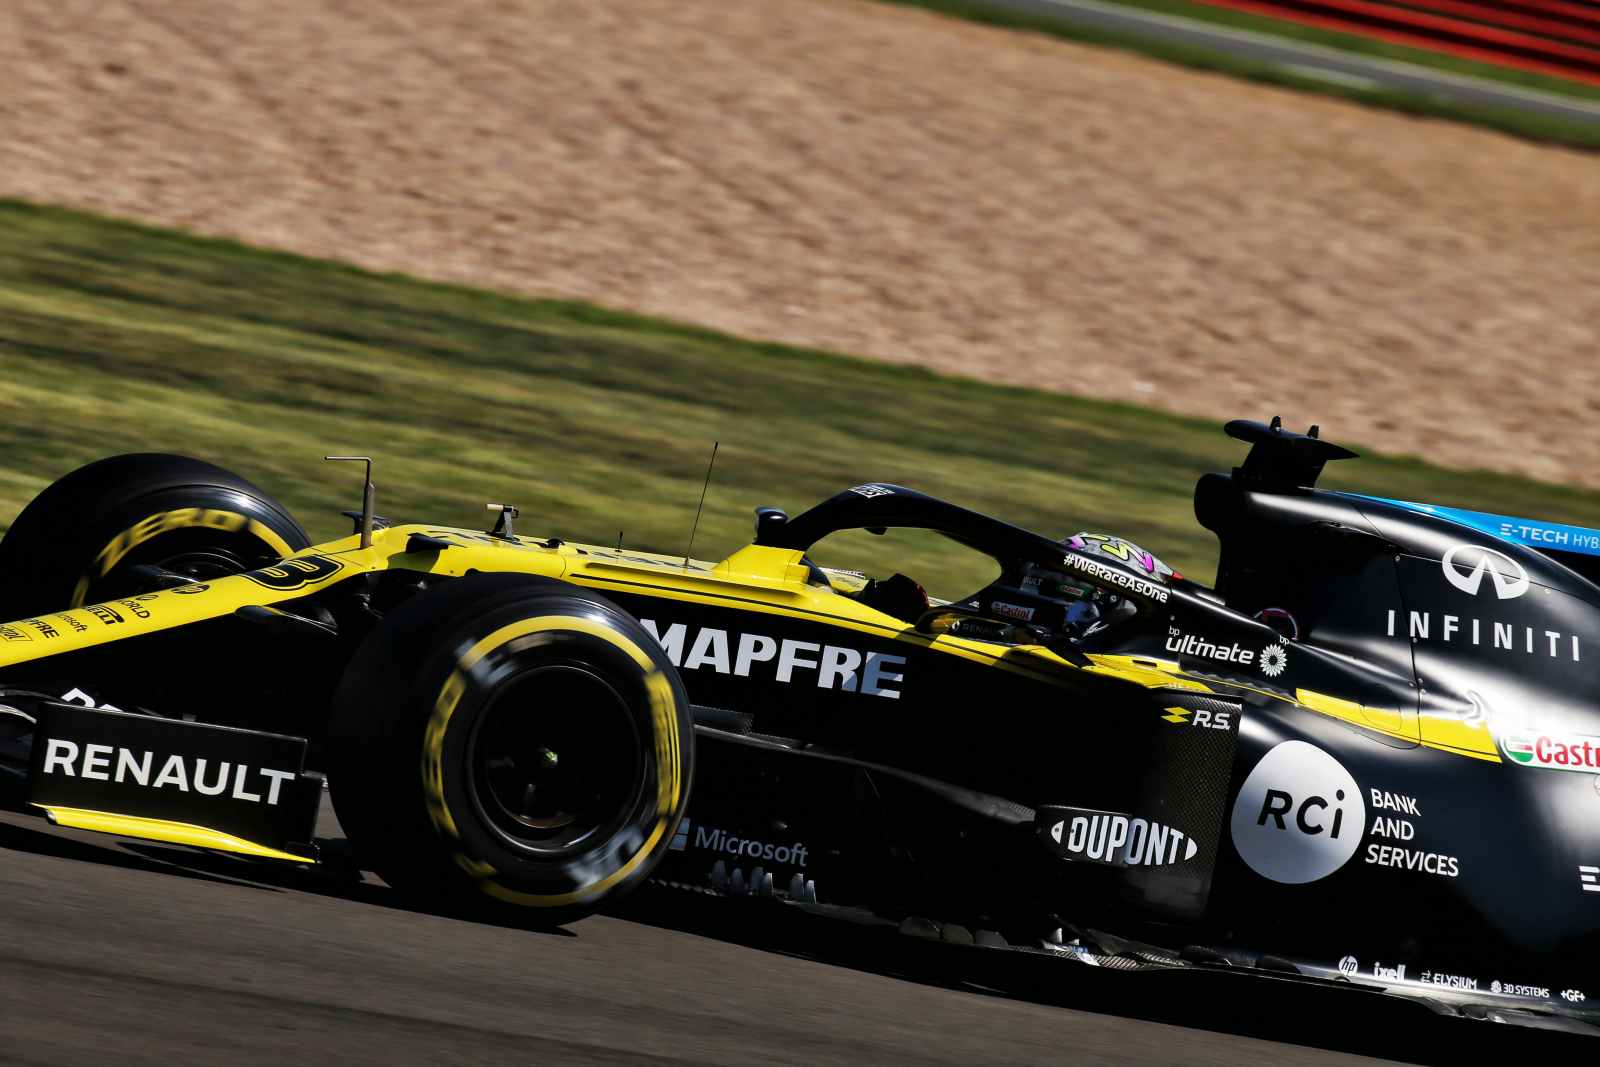 8) Daniel Ricciardo (Renault), 1min26s009